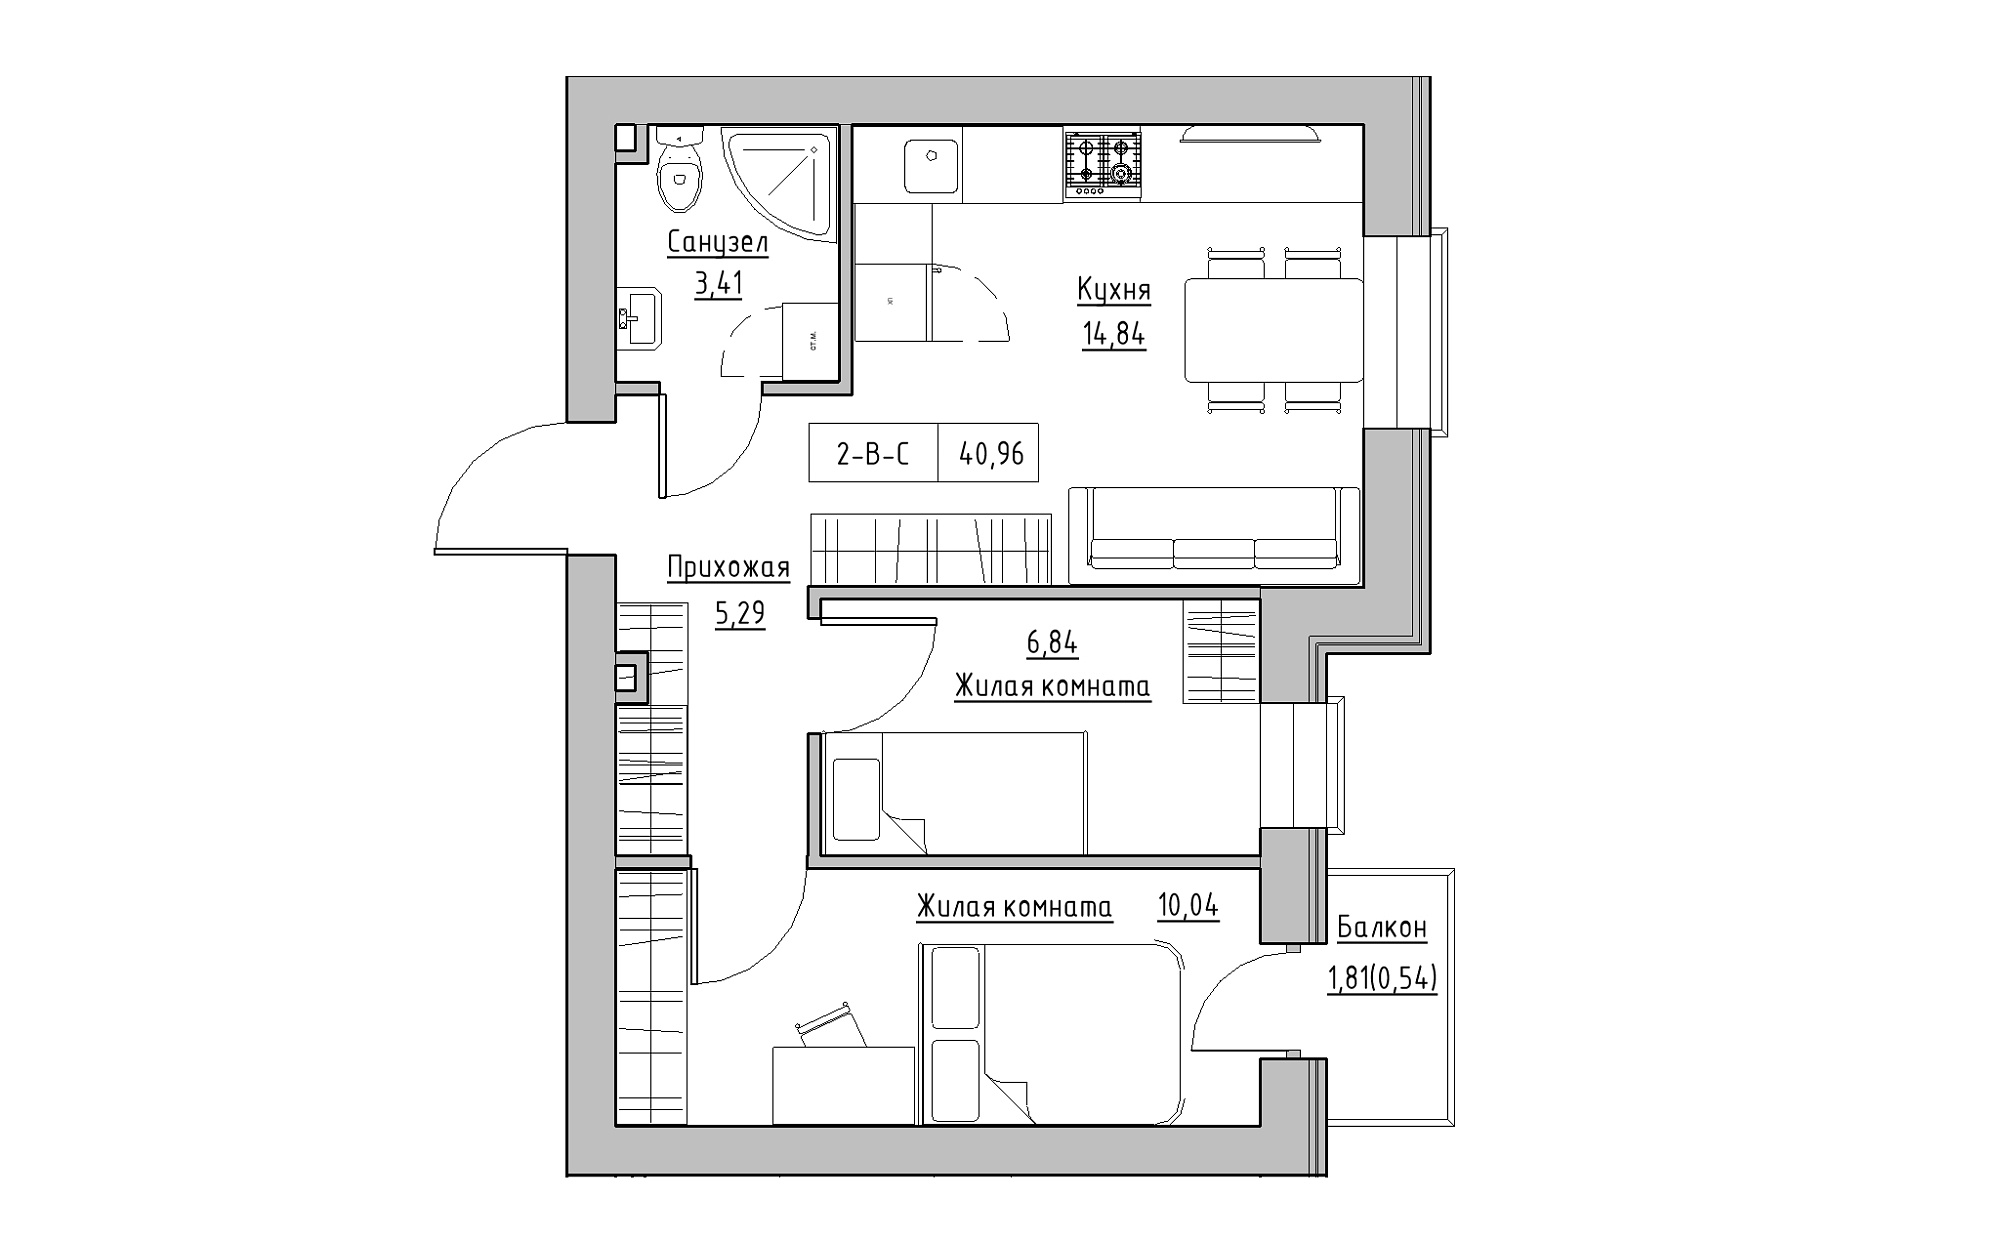 Планування 2-к квартира площею 40.96м2, KS-022-02/0010.